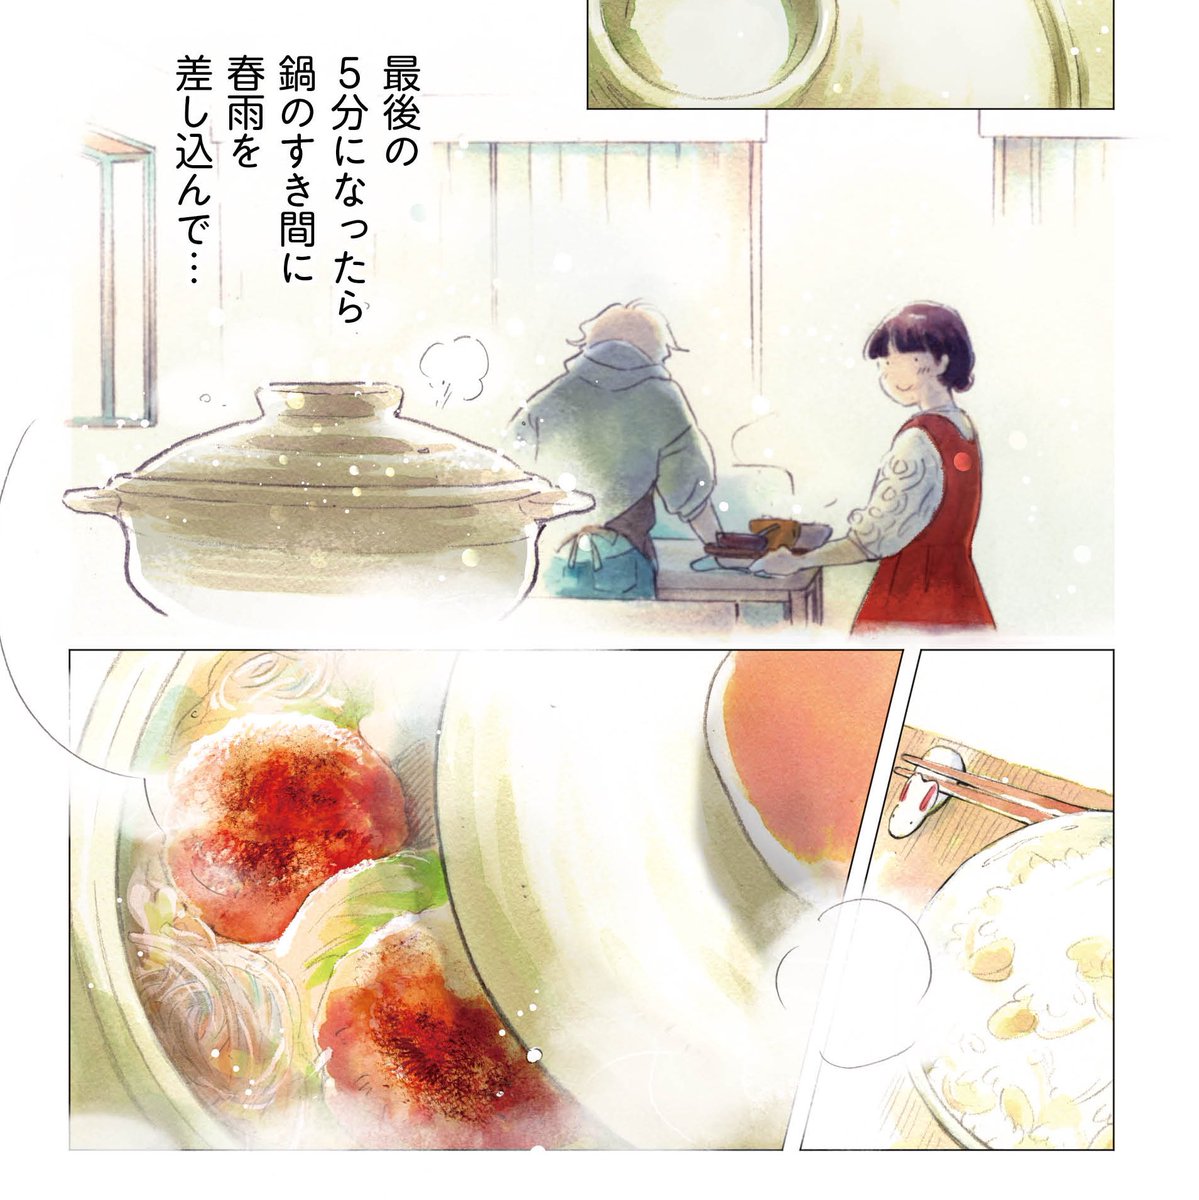 「盛りつけ上手な円山さん」
第8話、本日更新されました。

白菜どっさりのあったかい鍋料理が食べたい季節だね〜というお話です🥬🍲
よろしくお願いします!
https://t.co/LfTxH7xQox 